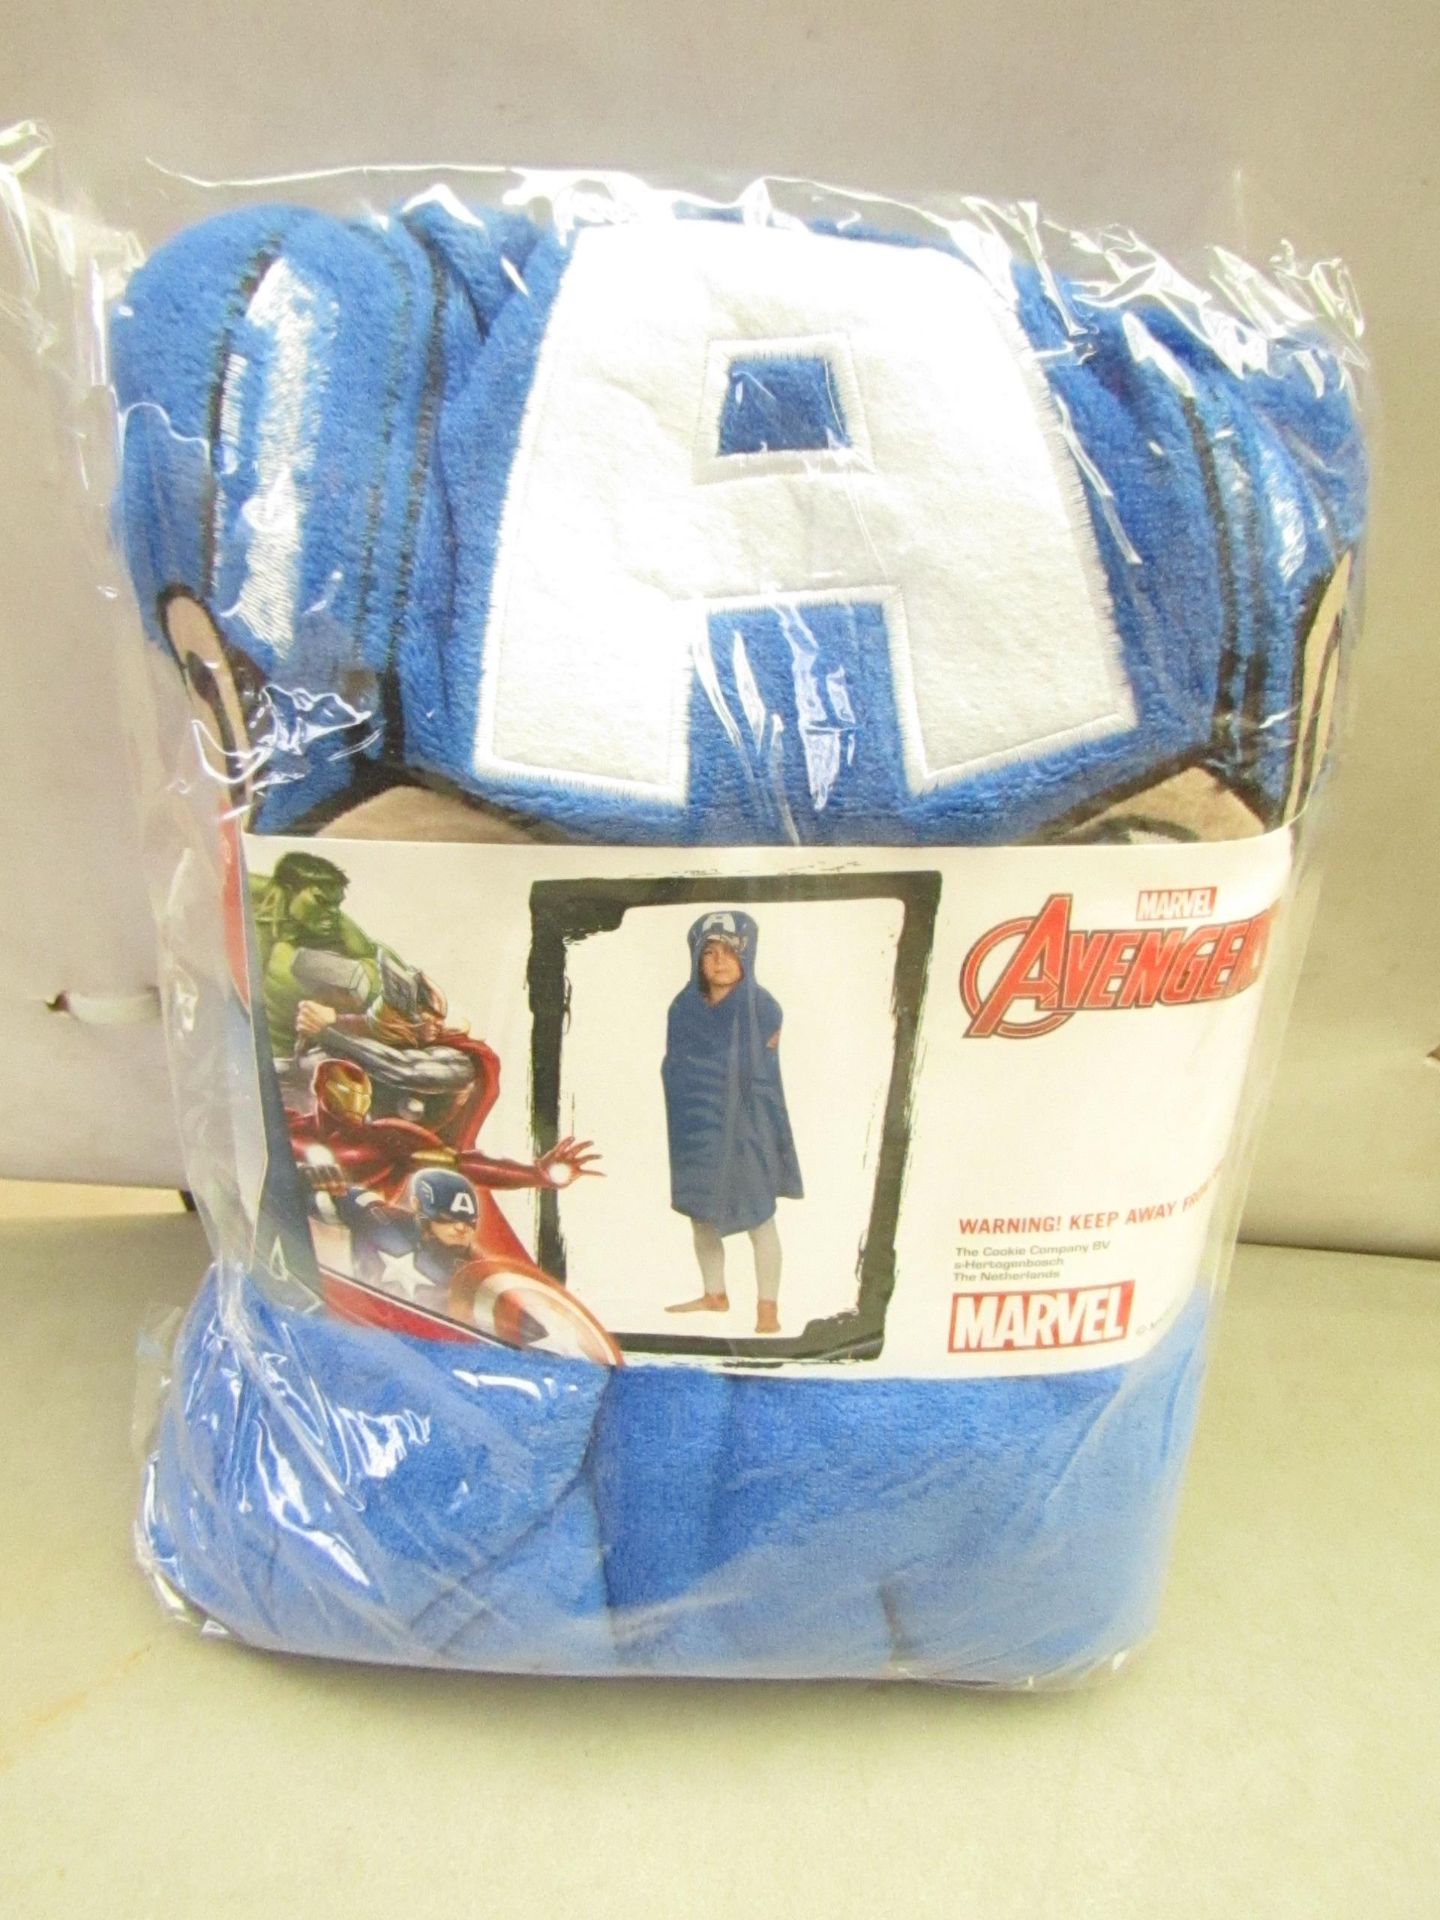 Marvel Avengers Cuddle Robe. 80cm x 120cm. New & packaged